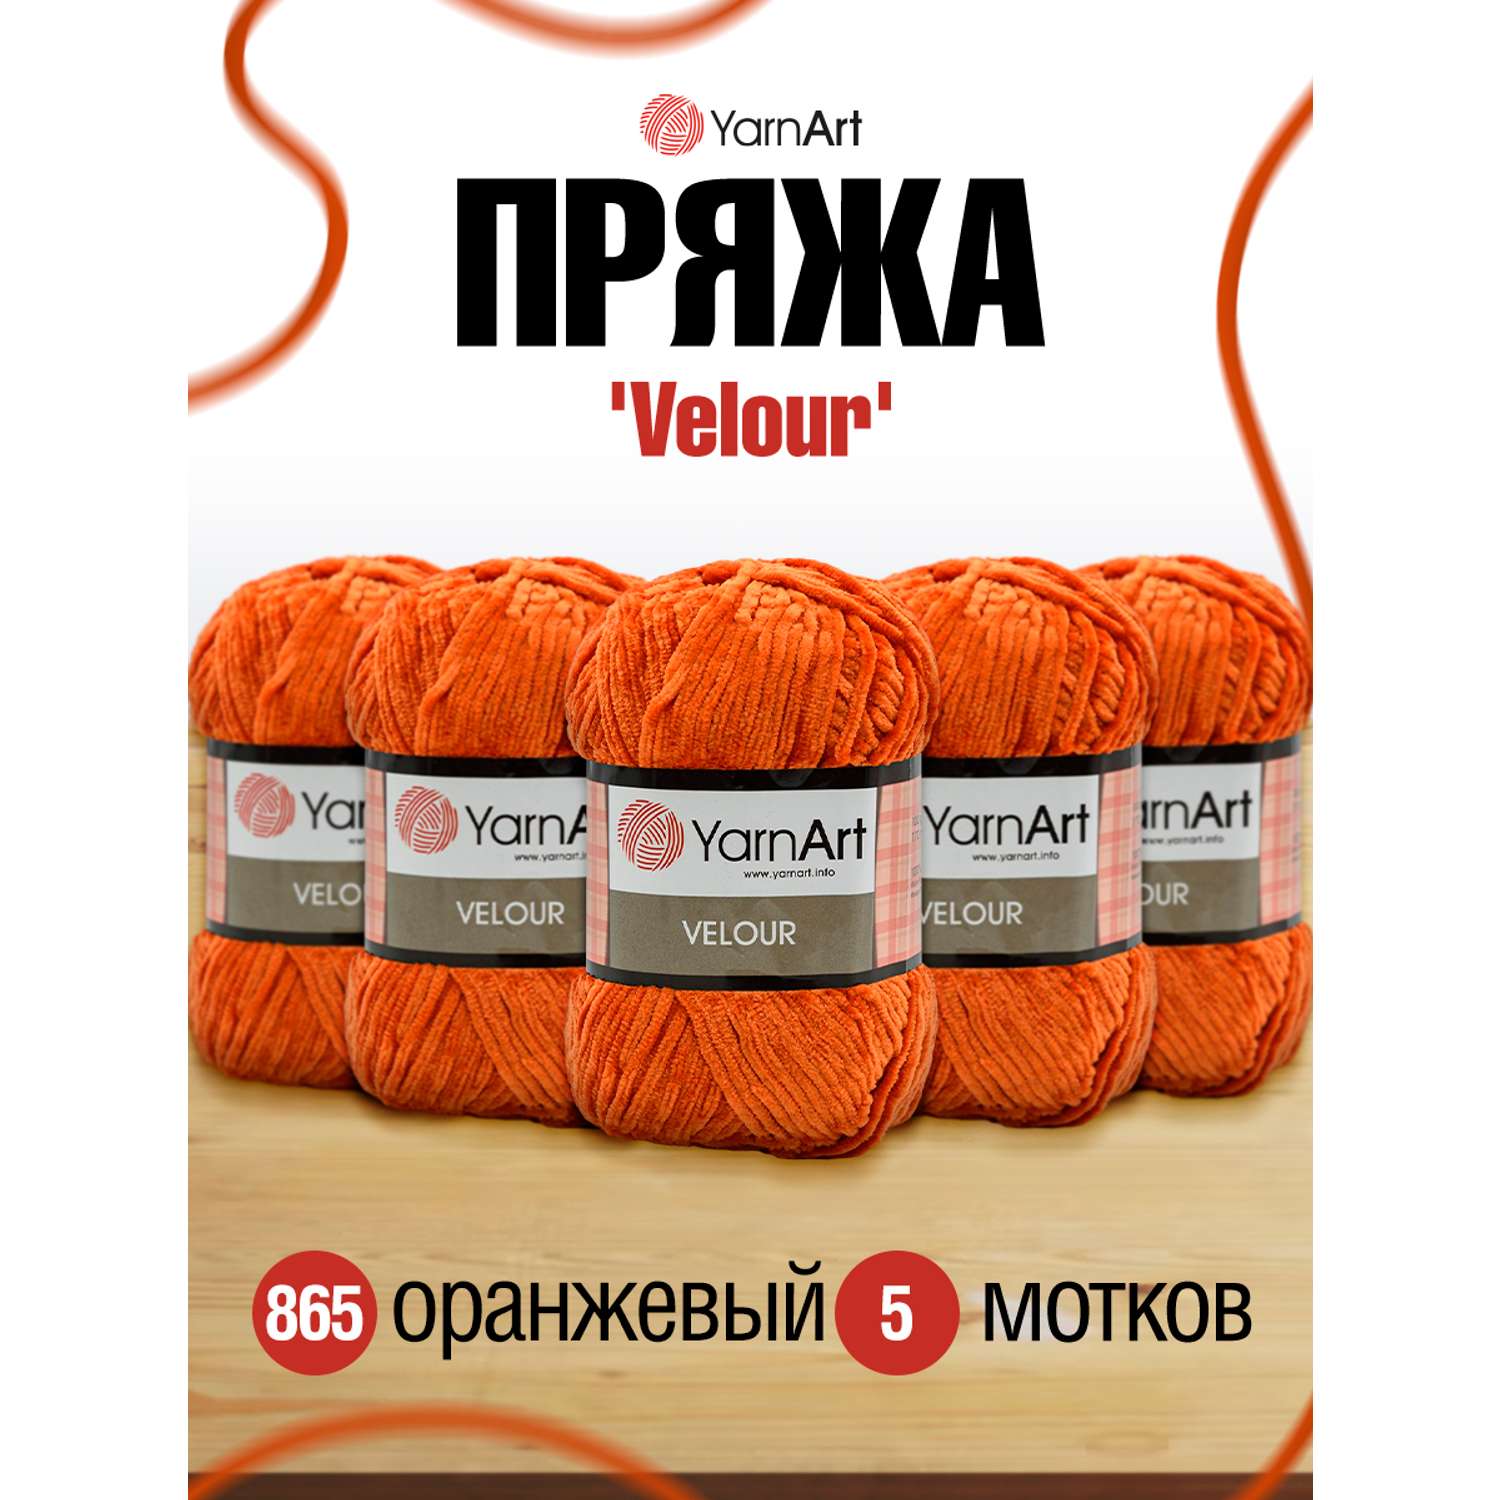 Пряжа для вязания YarnArt Velour 100 г 170 м микрополиэстер мягкая велюровая 5 мотков 865 оранжевый - фото 1